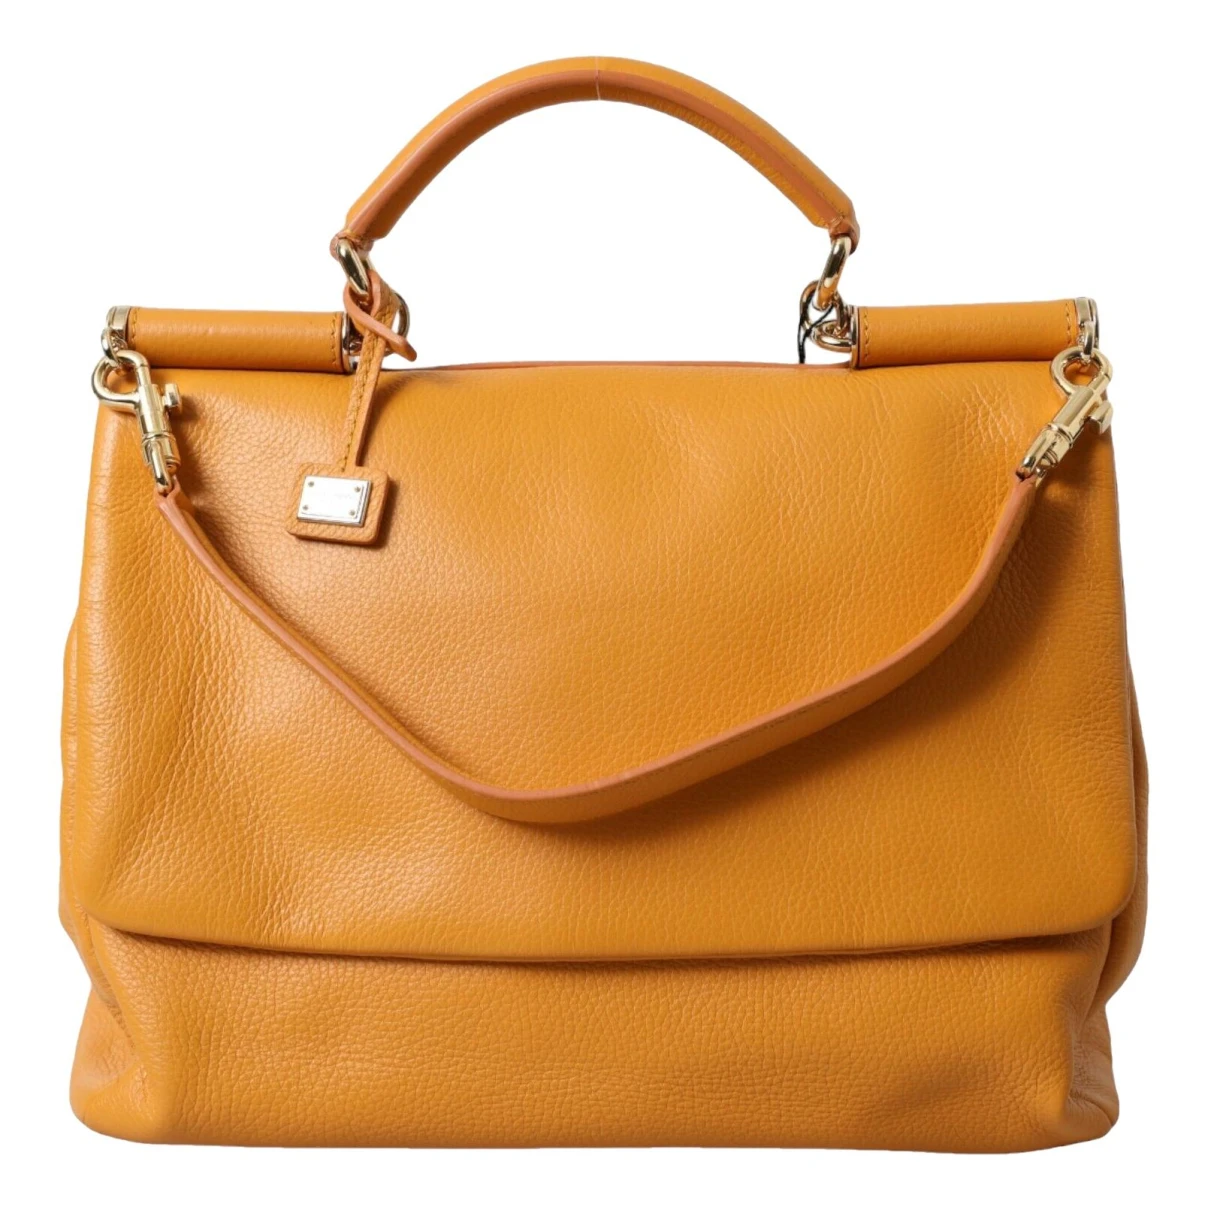 Pre-owned Dolce & Gabbana Sicily Leather Handbag In Orange